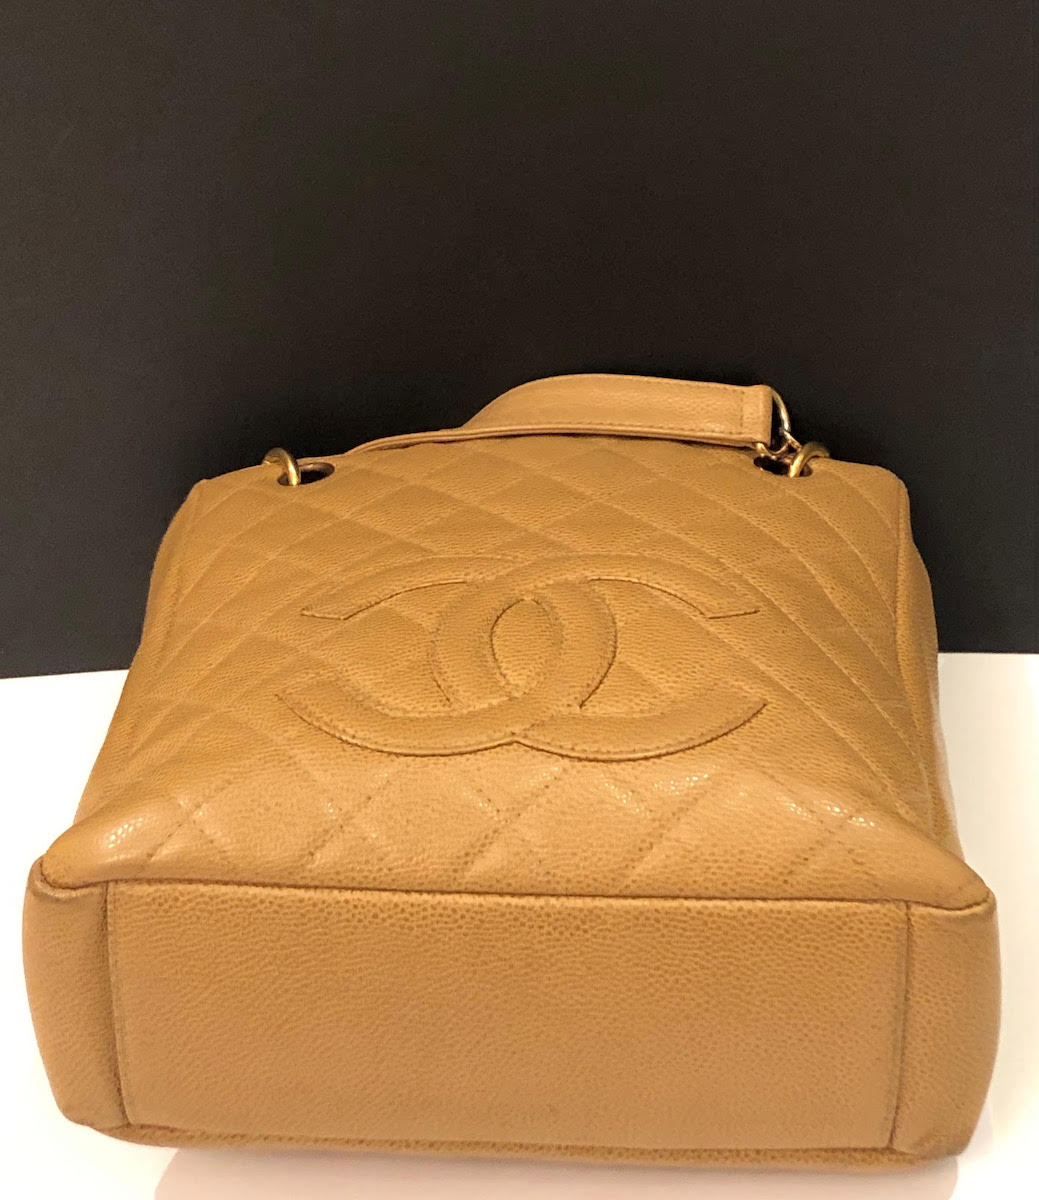 Chanel Vintage Chanel Beige Quilted Leather 2 Way Shoulder Handbag